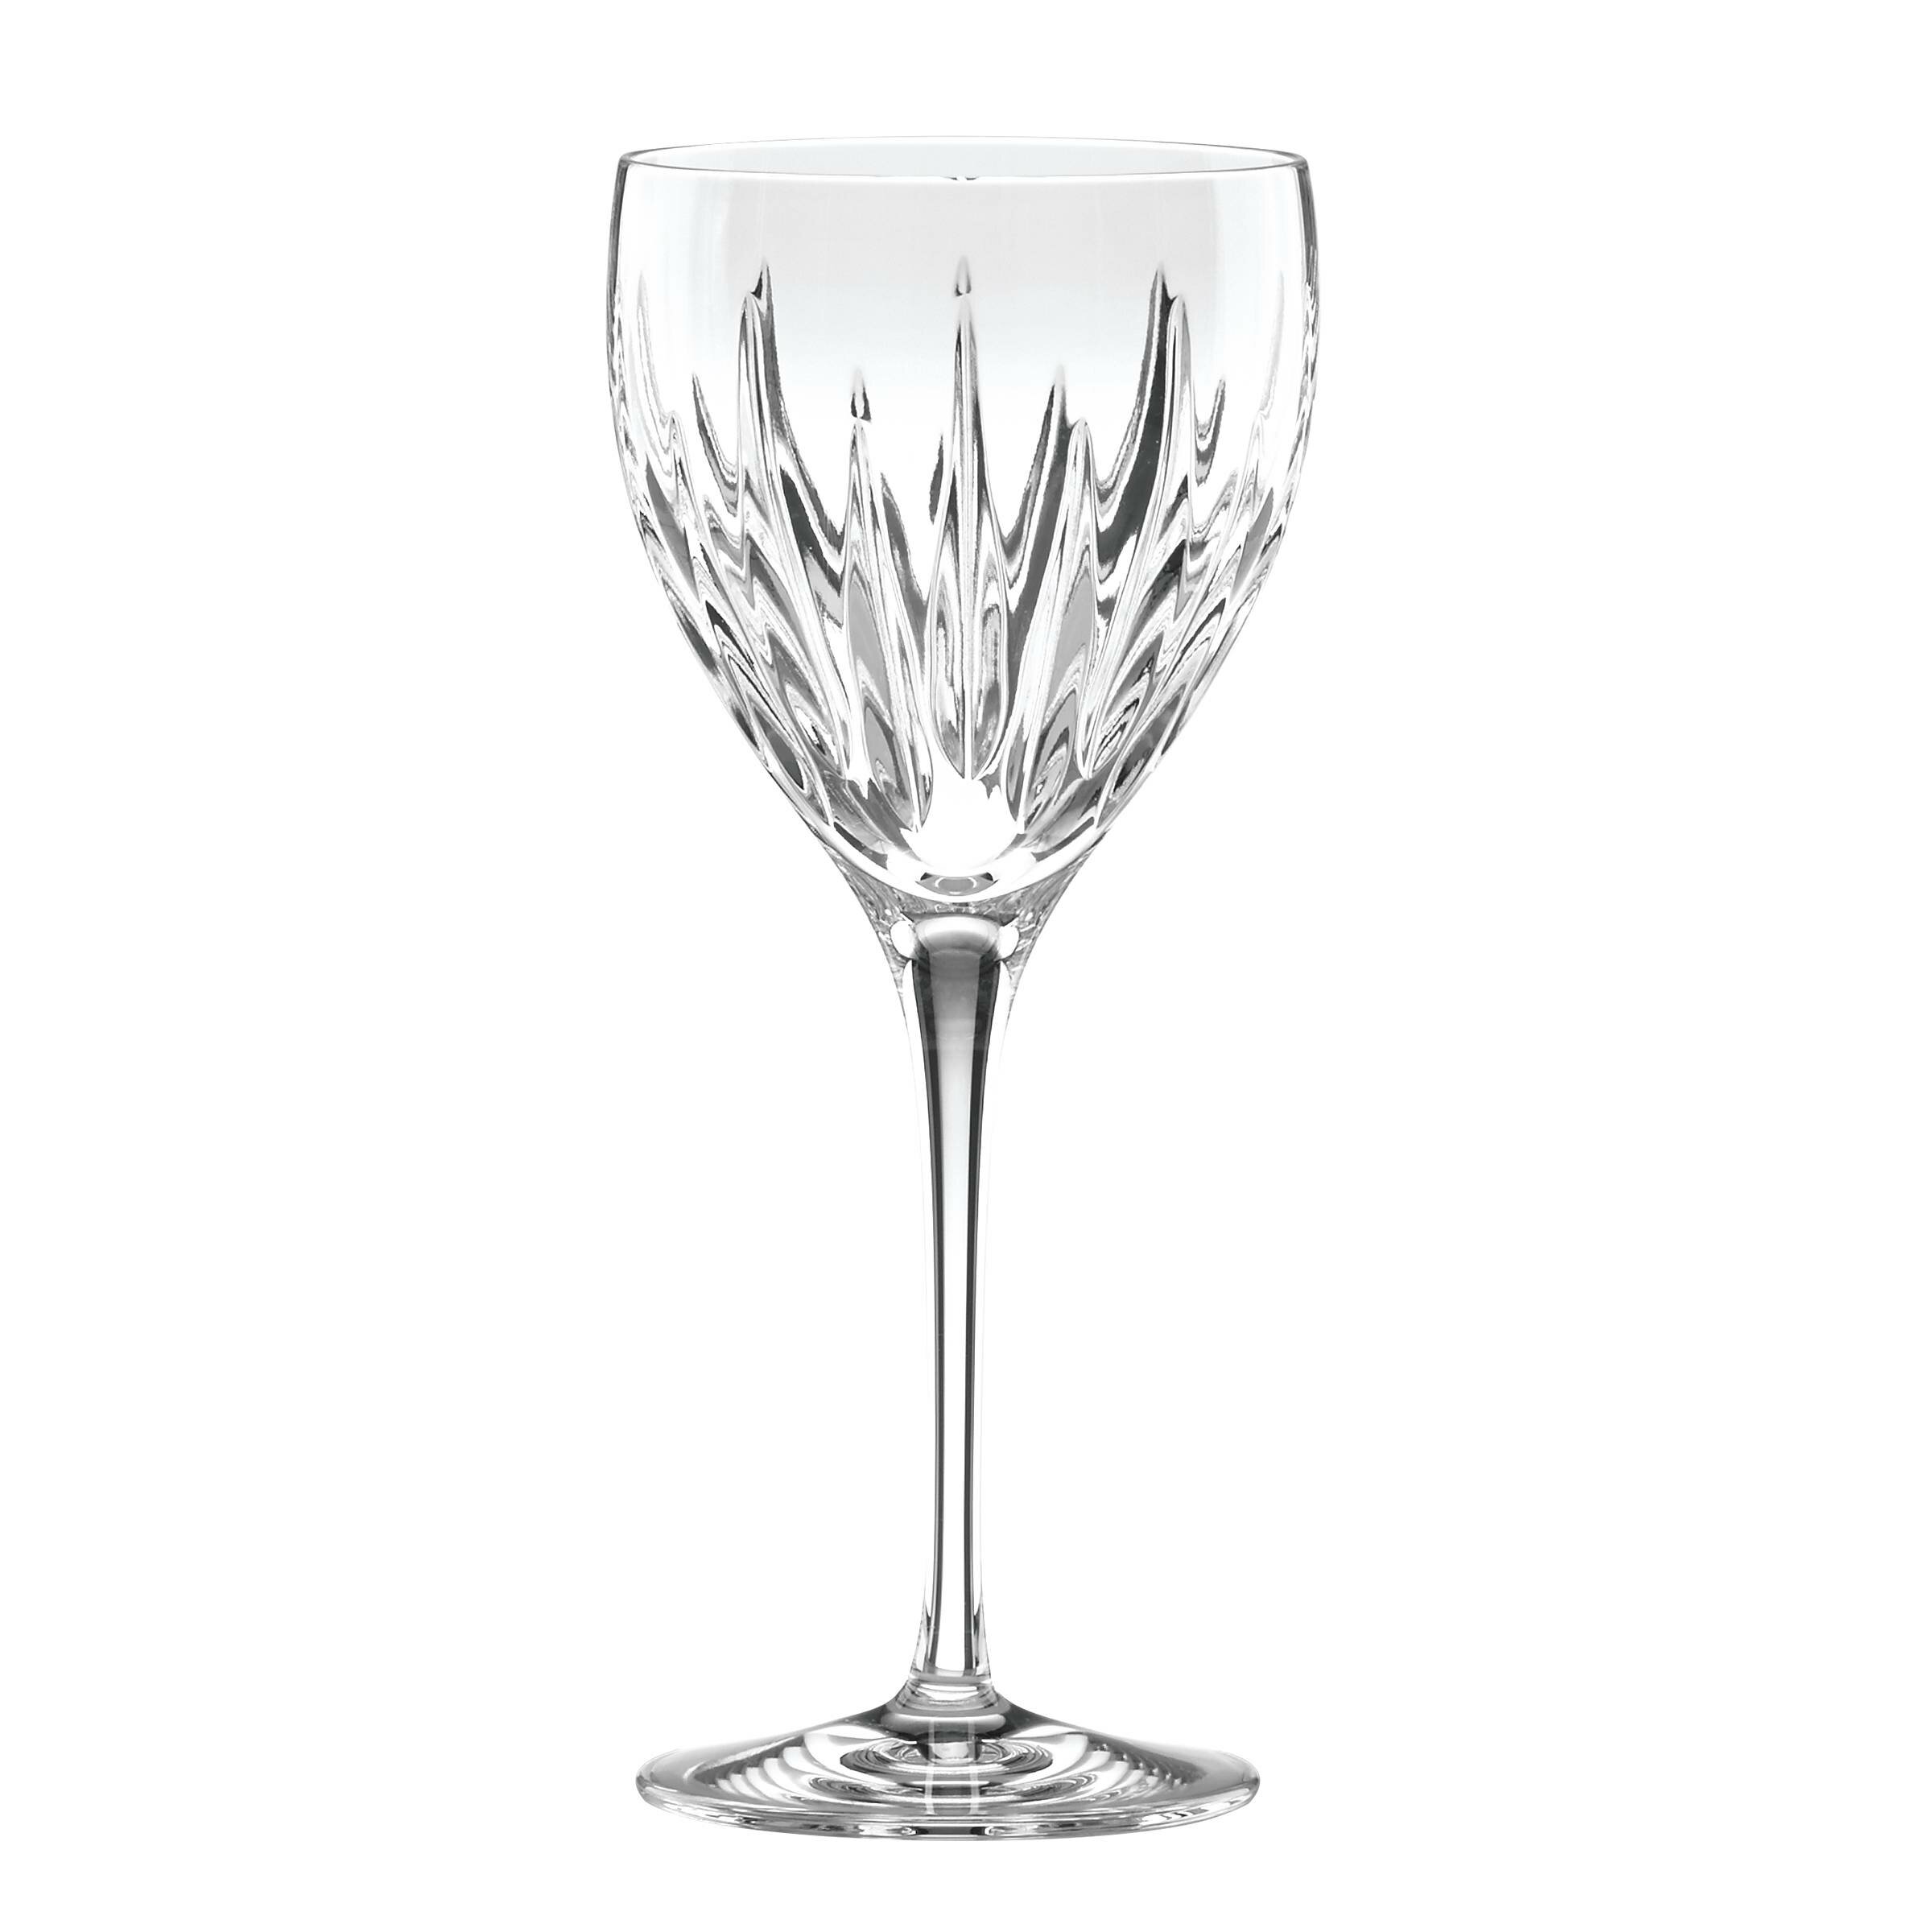 https://assets.wfcdn.com/im/10854246/compr-r85/4682/46829427/soho-12-oz-lead-crystal-stemmed-wine-glass.jpg